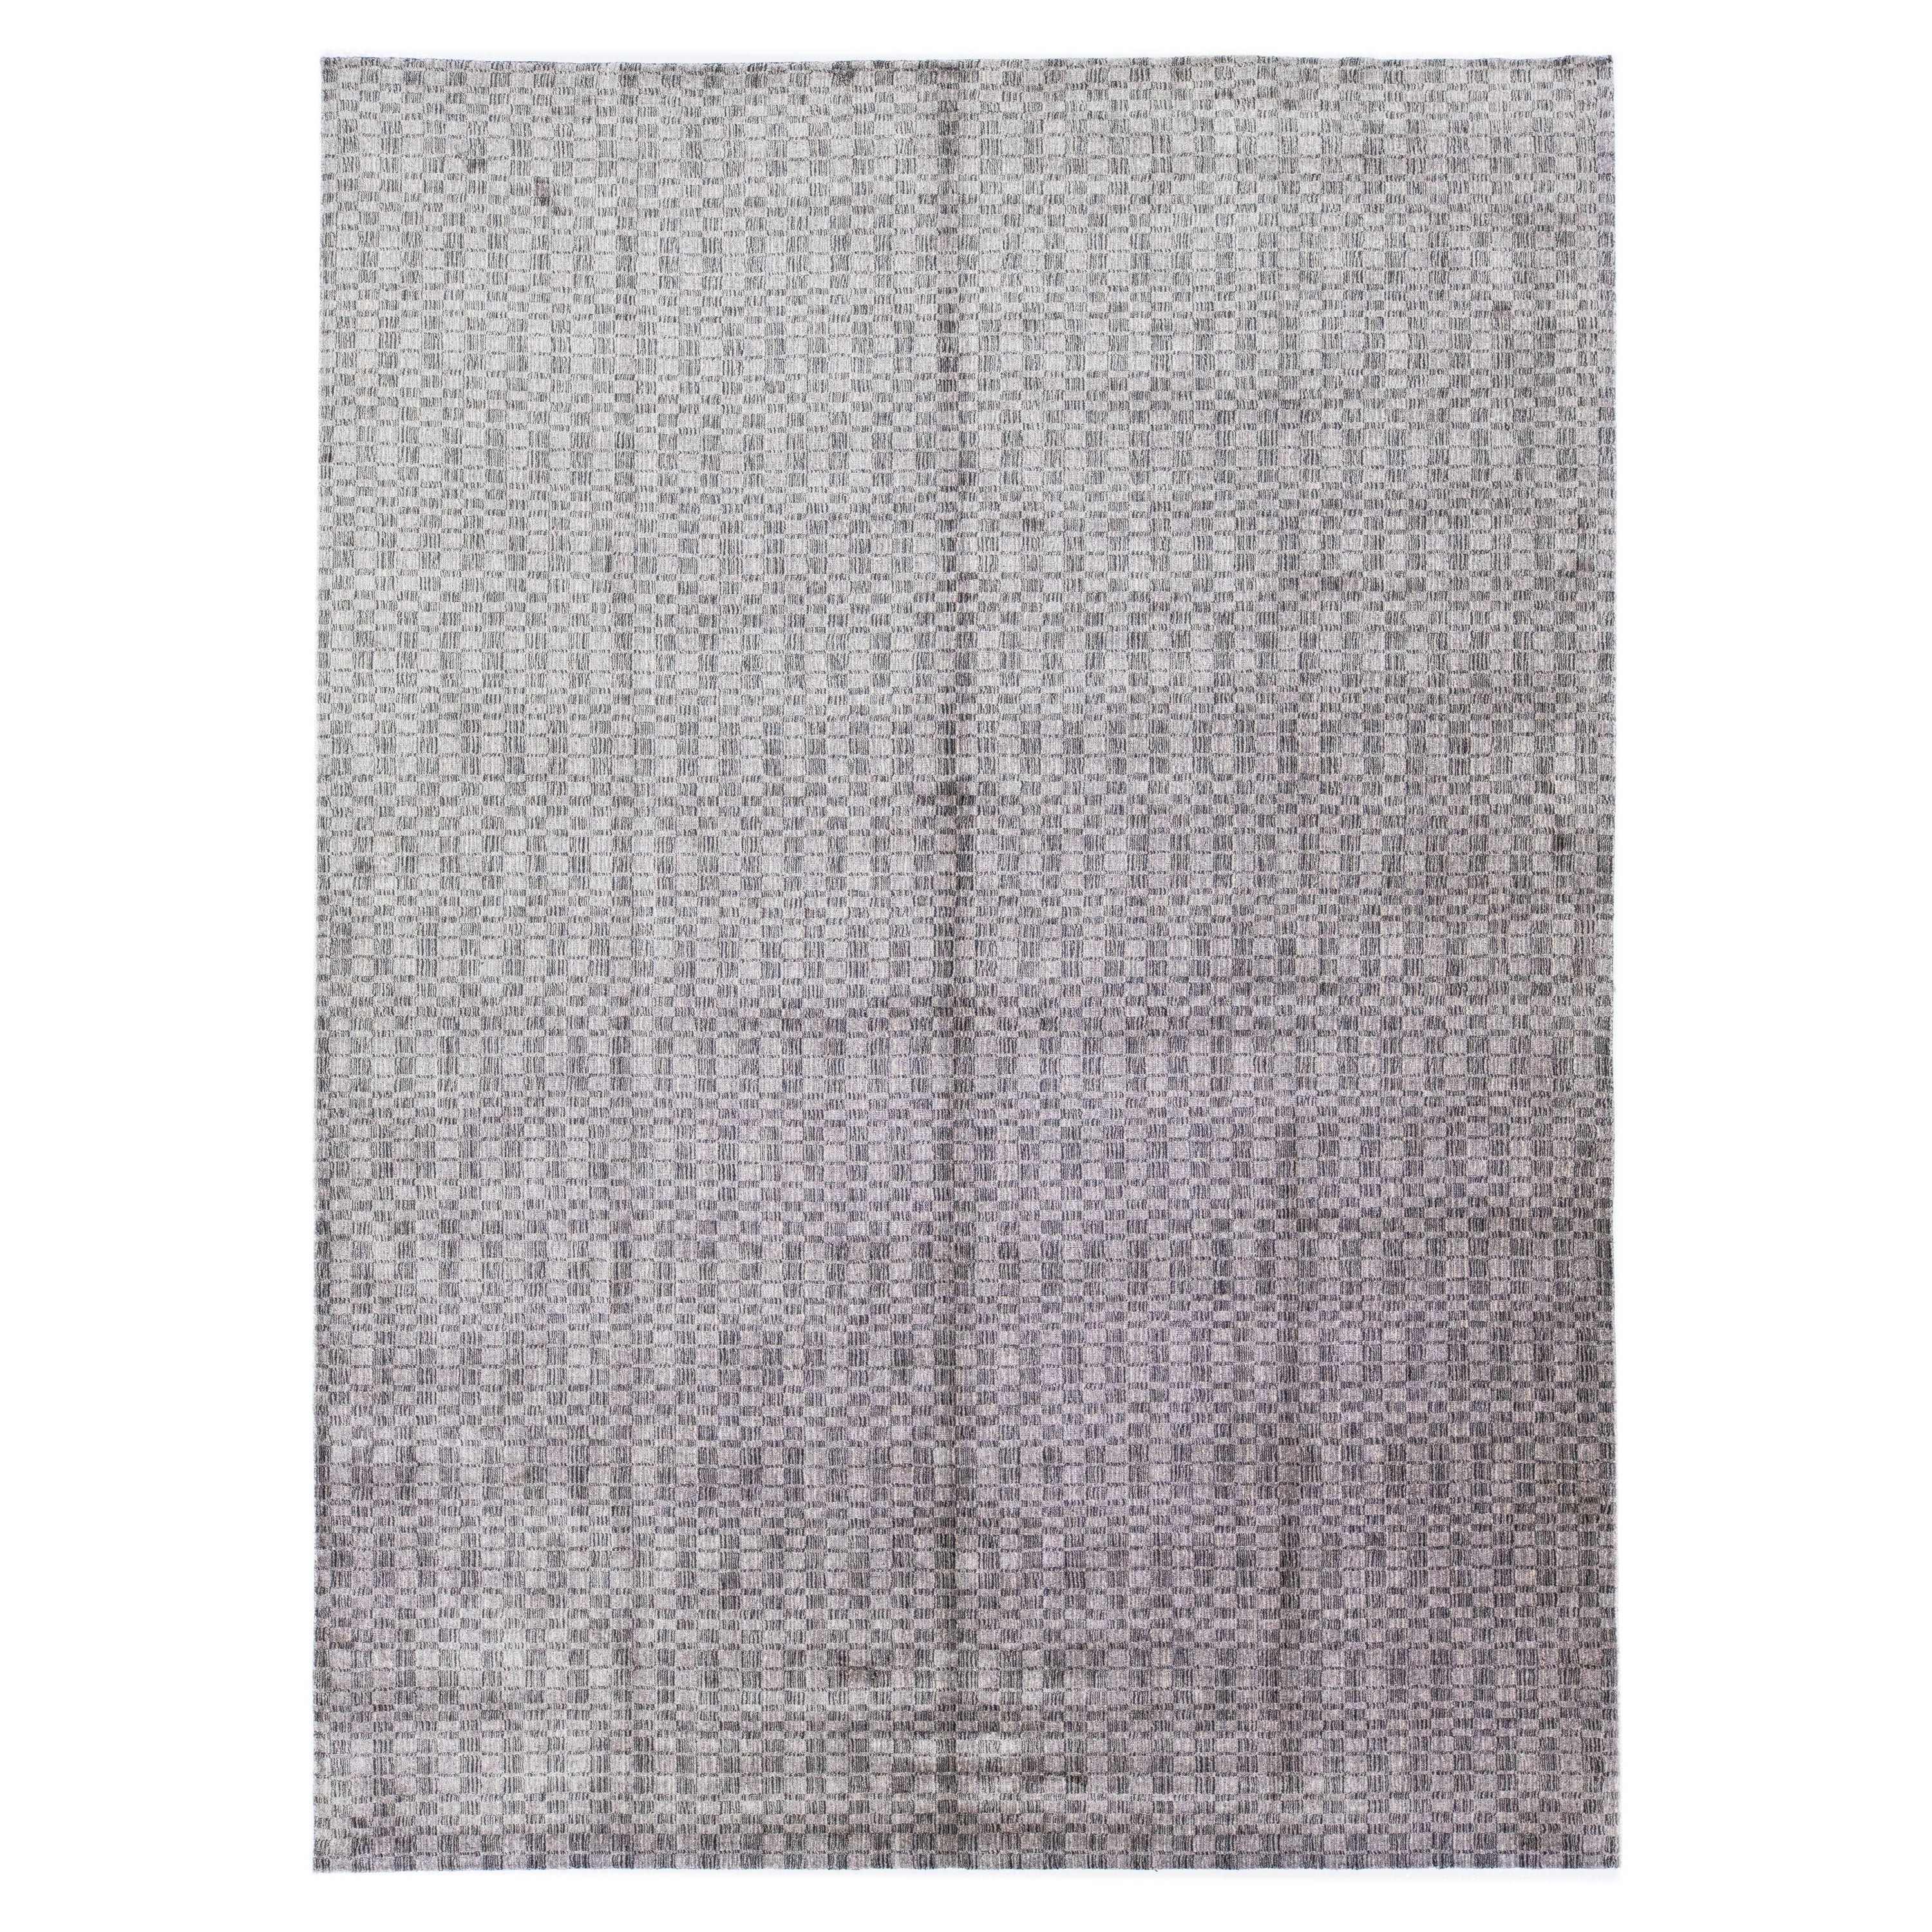 Moderner grauer Teppich aus Wolle und Seide, handgefertigt mit geometrischem Design